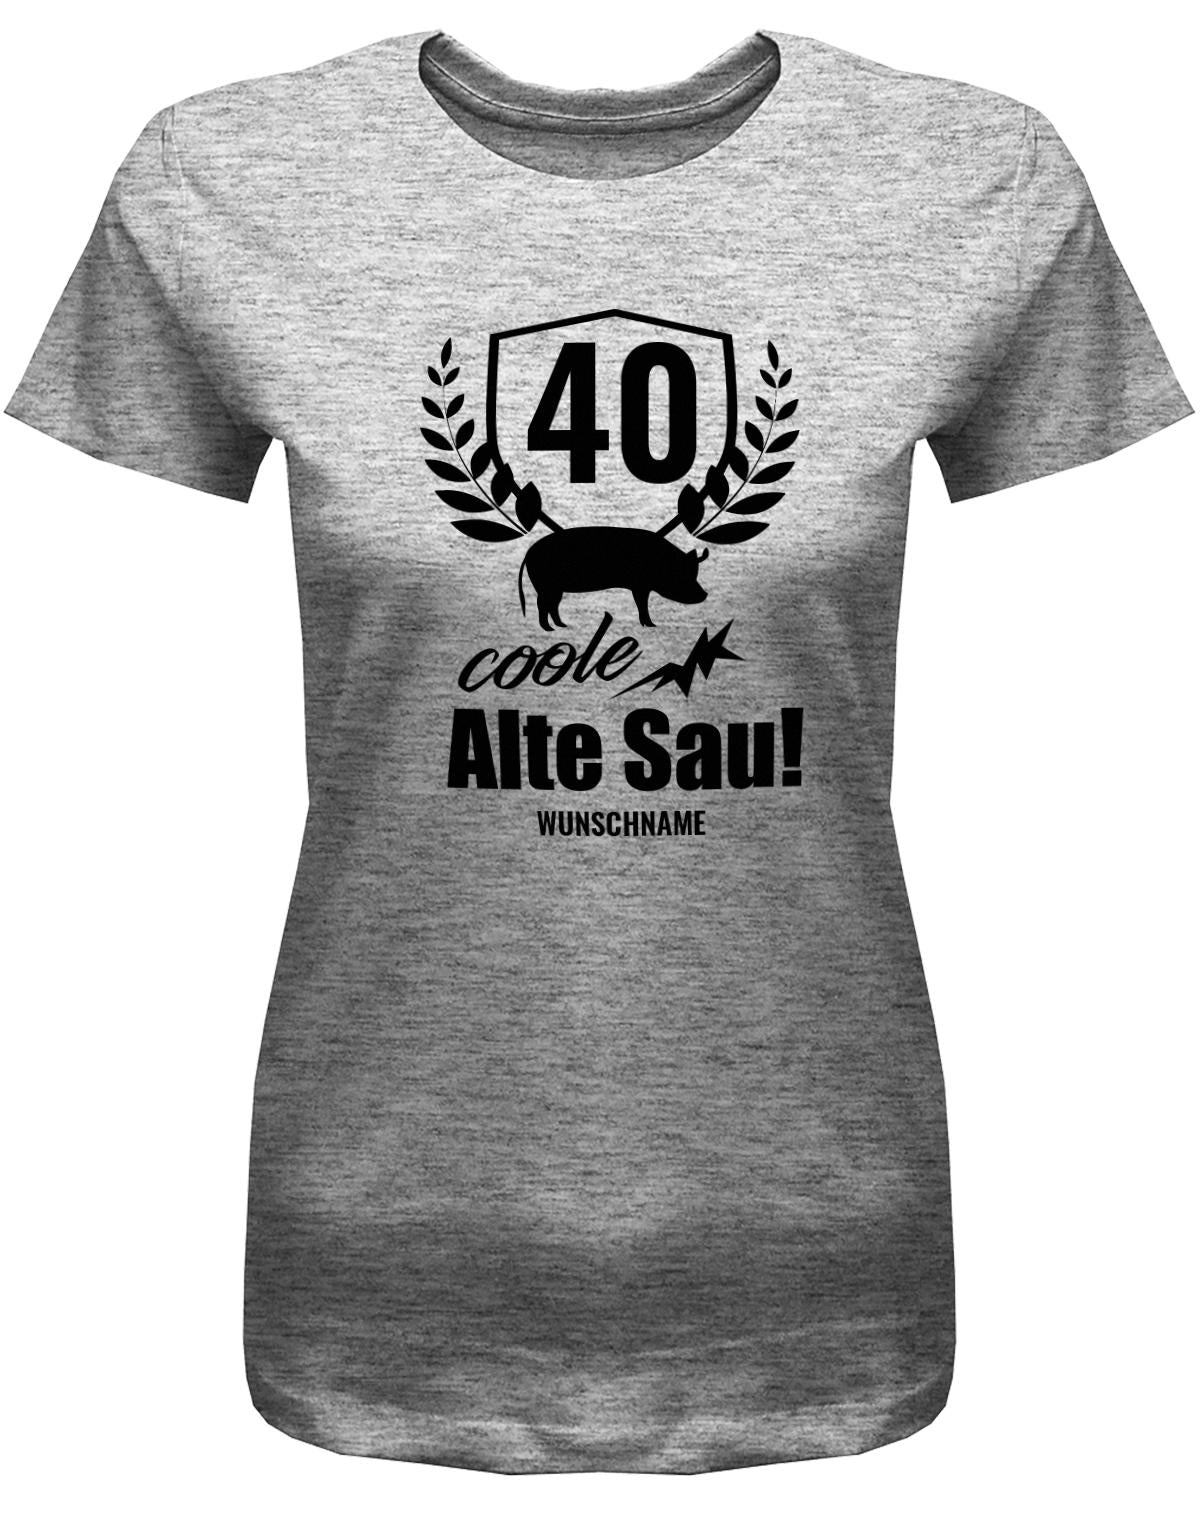 Lustiges T-Shirt zum 40. Geburtstag für die Frau Bedruckt mit 40 coole alte Sau personalisiert mit Name. Grau